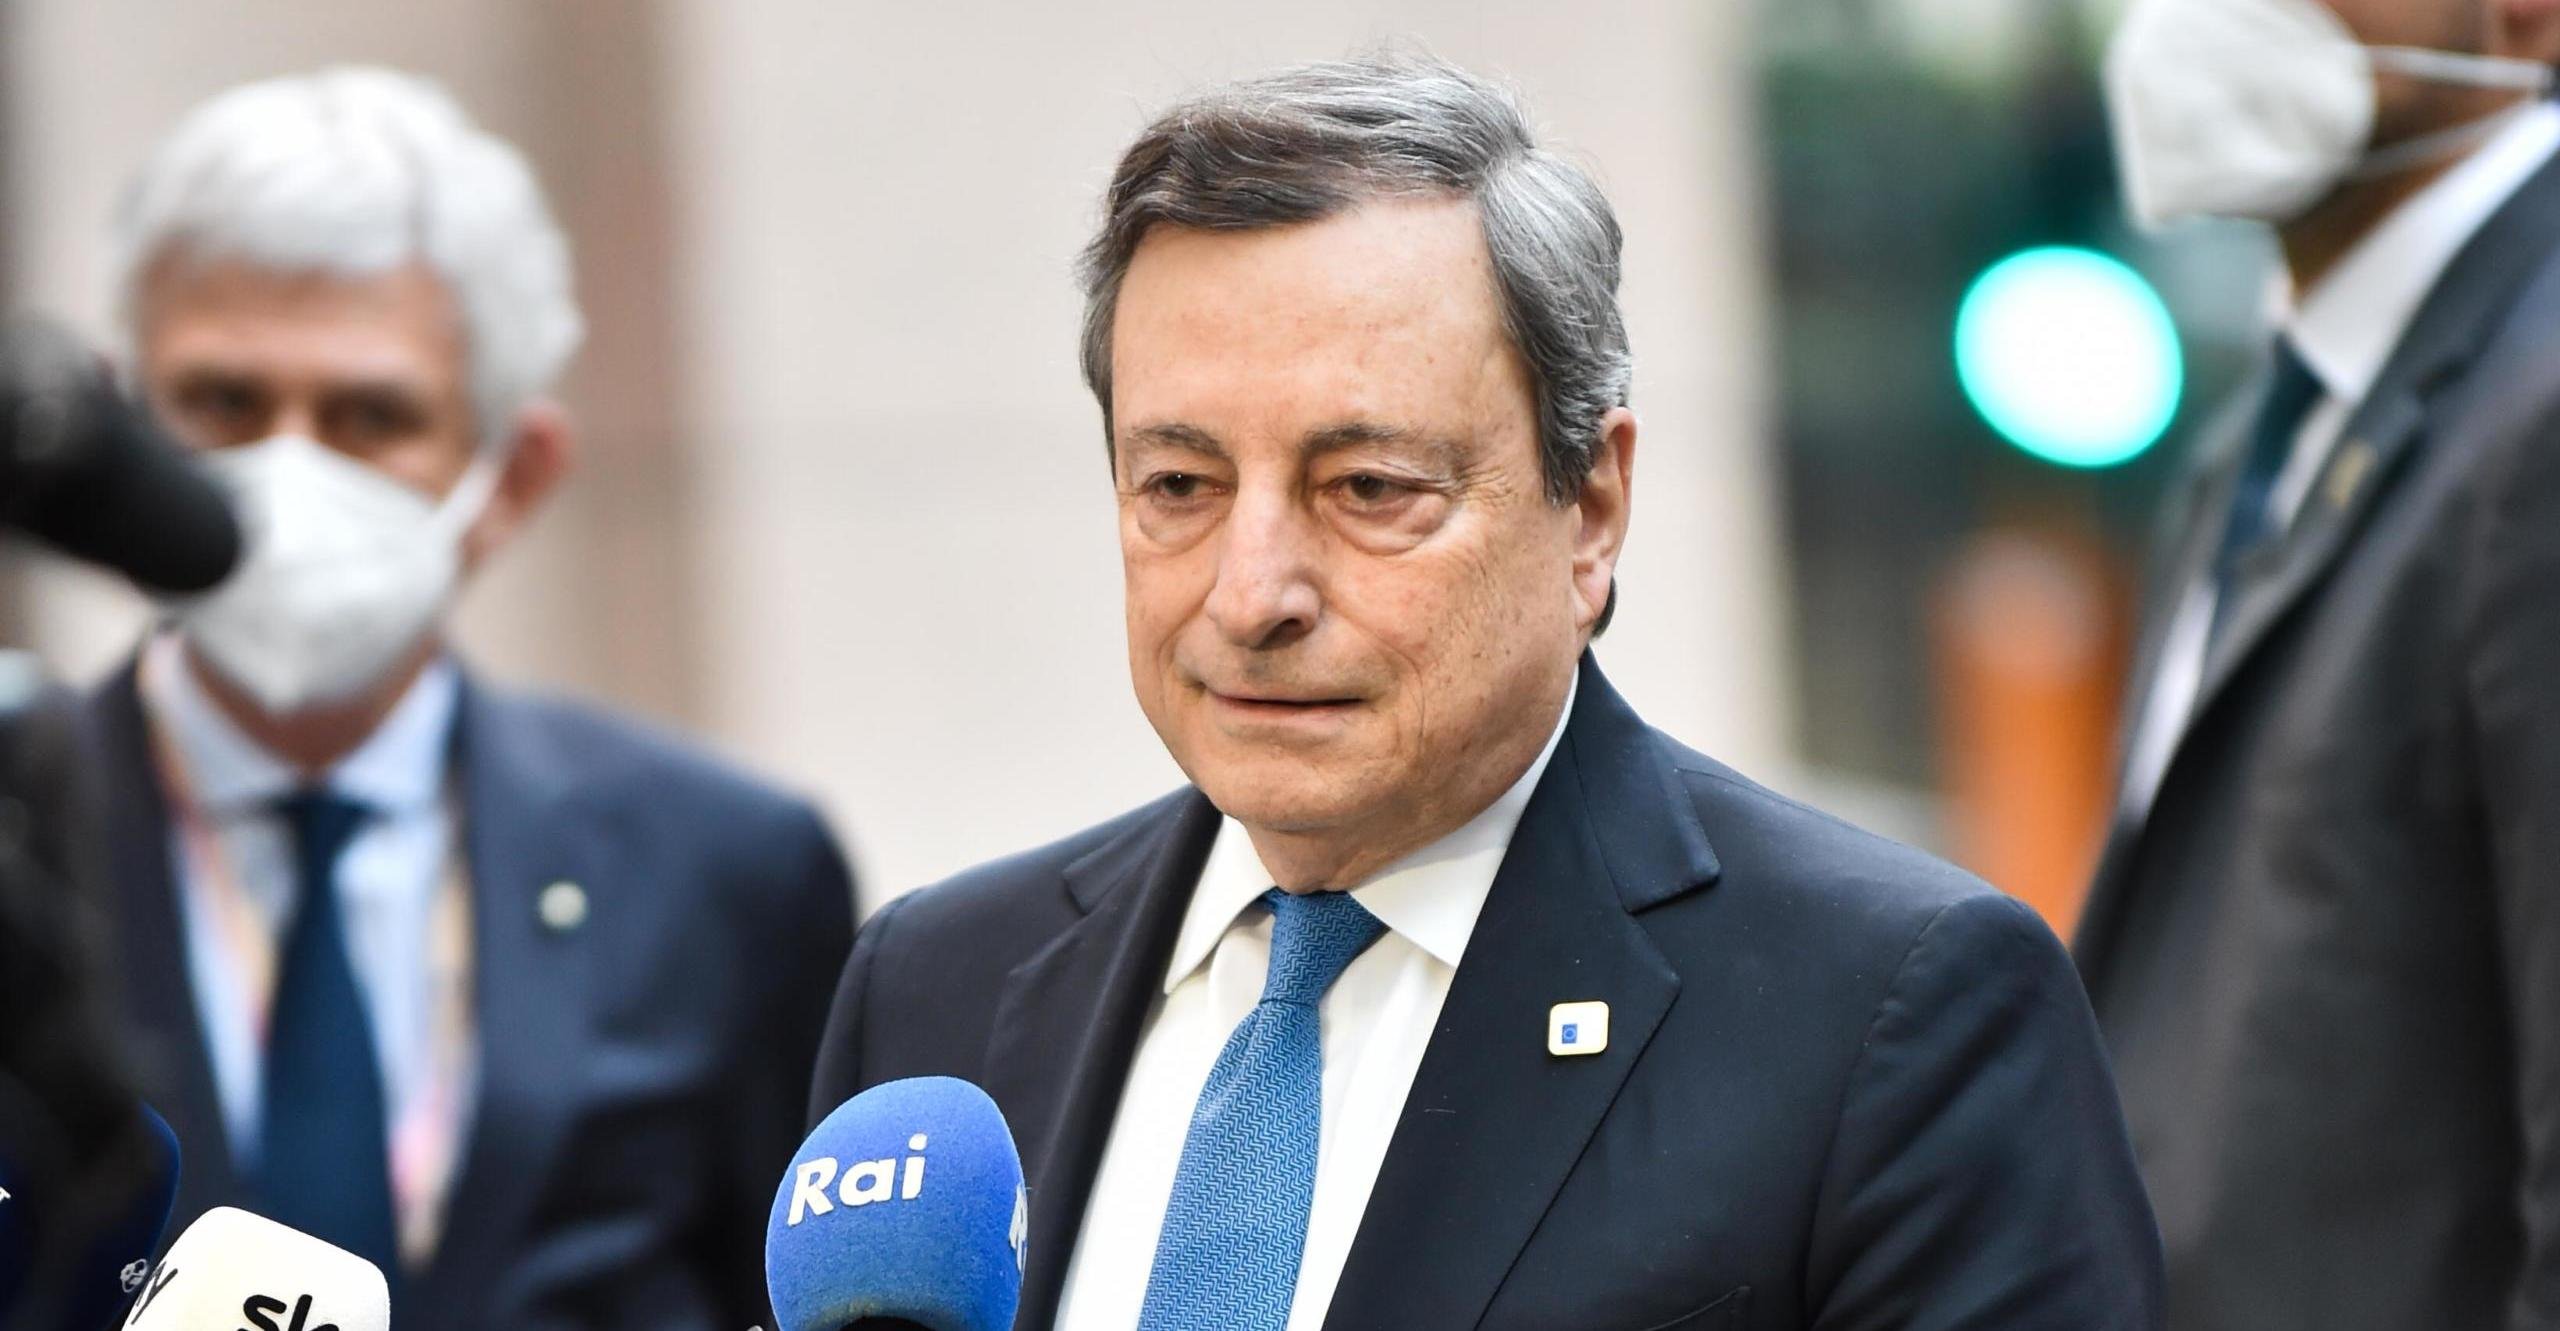 Mario Draghi Consiglio europeo proposta italiana tetto gas draghi prossimo preisdente del consiglio Bonus 200 euro Draghi